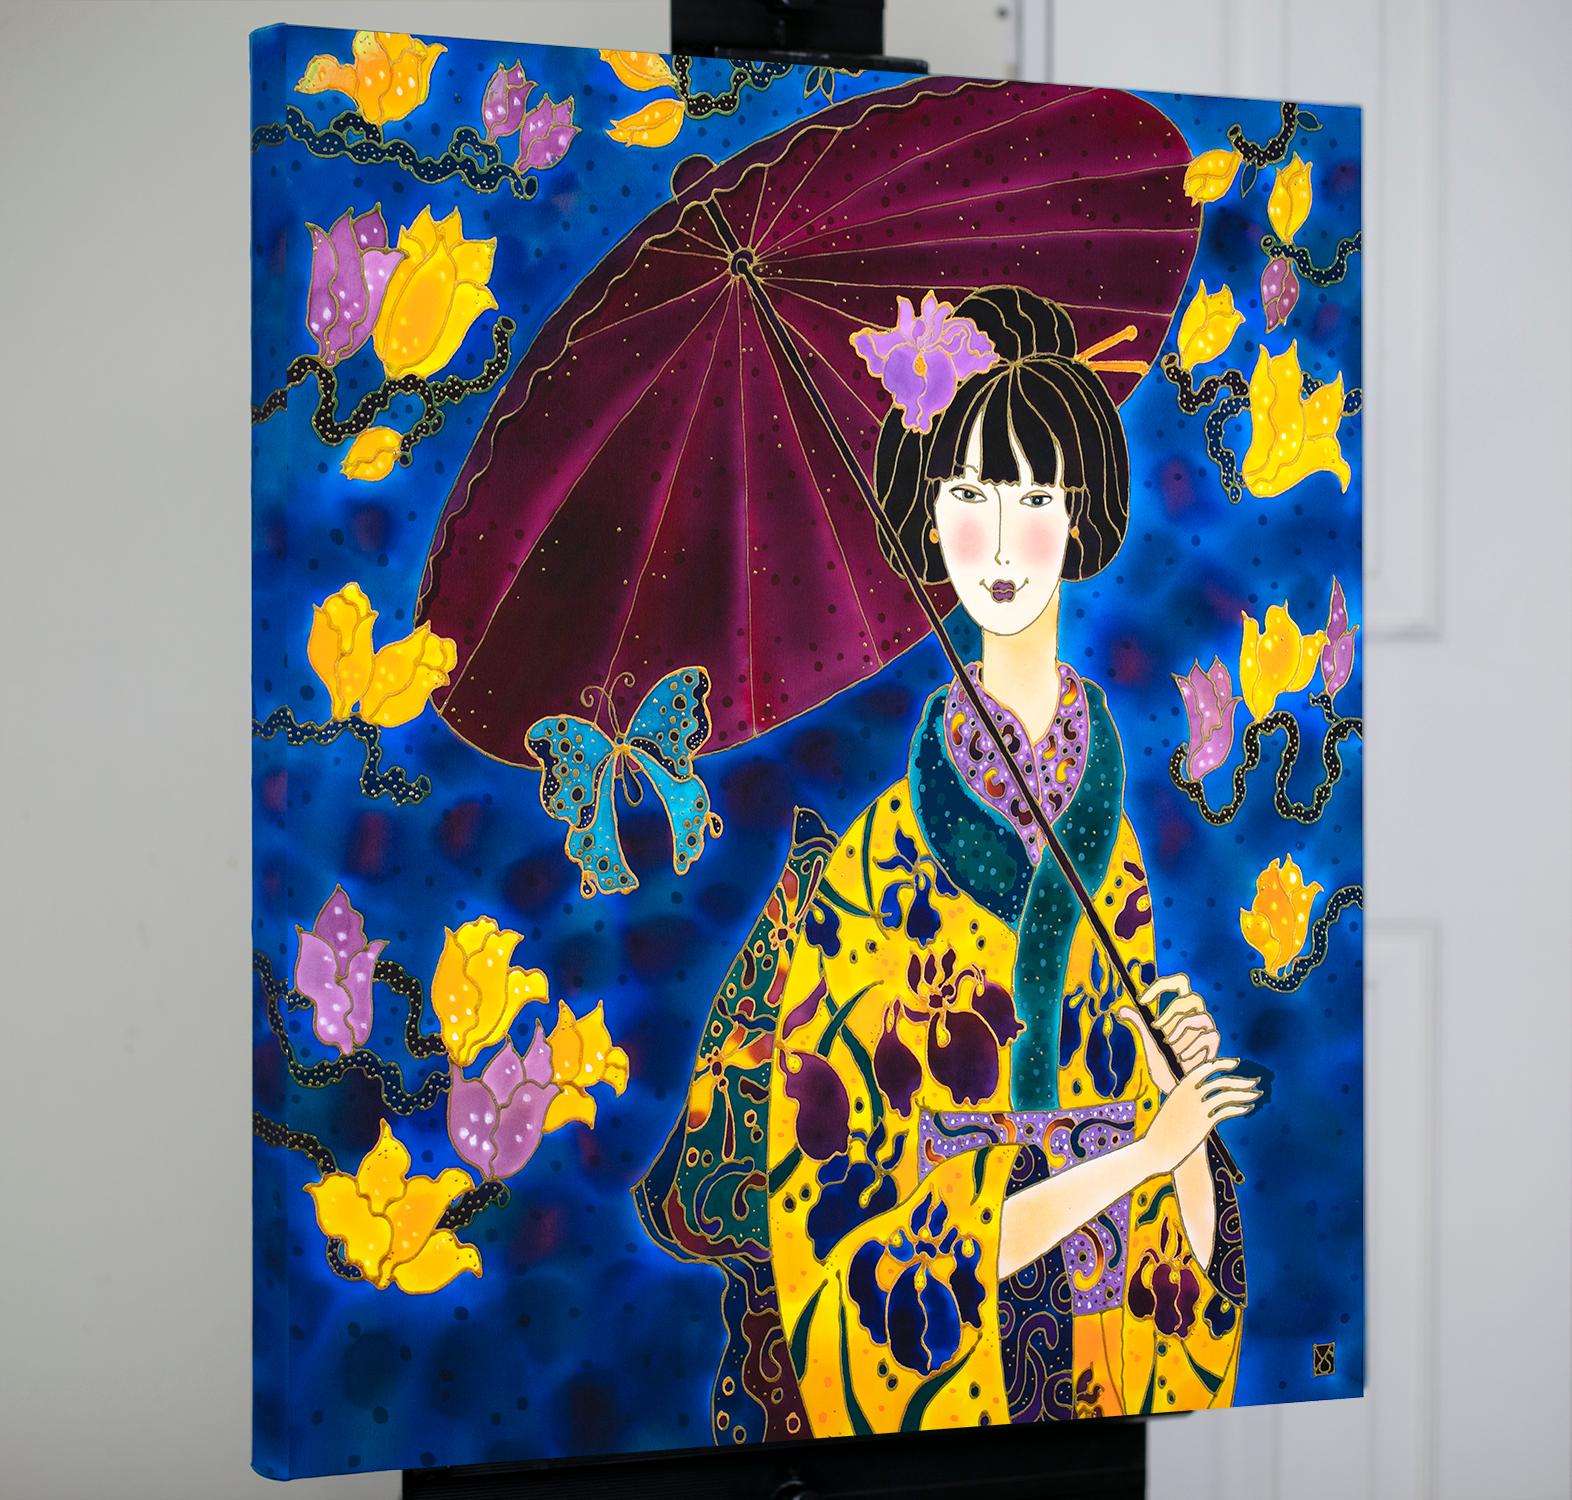 <p>Commentaires de l'artiste<br>L'artiste Yelena Sidorova présente le portrait d'une geisha vêtue d'un magnifique kimono d'iris et d'un parasol d'été. Elle peint l'œuvre comme une dédicace à l'artisanat exquis des Japonais. 